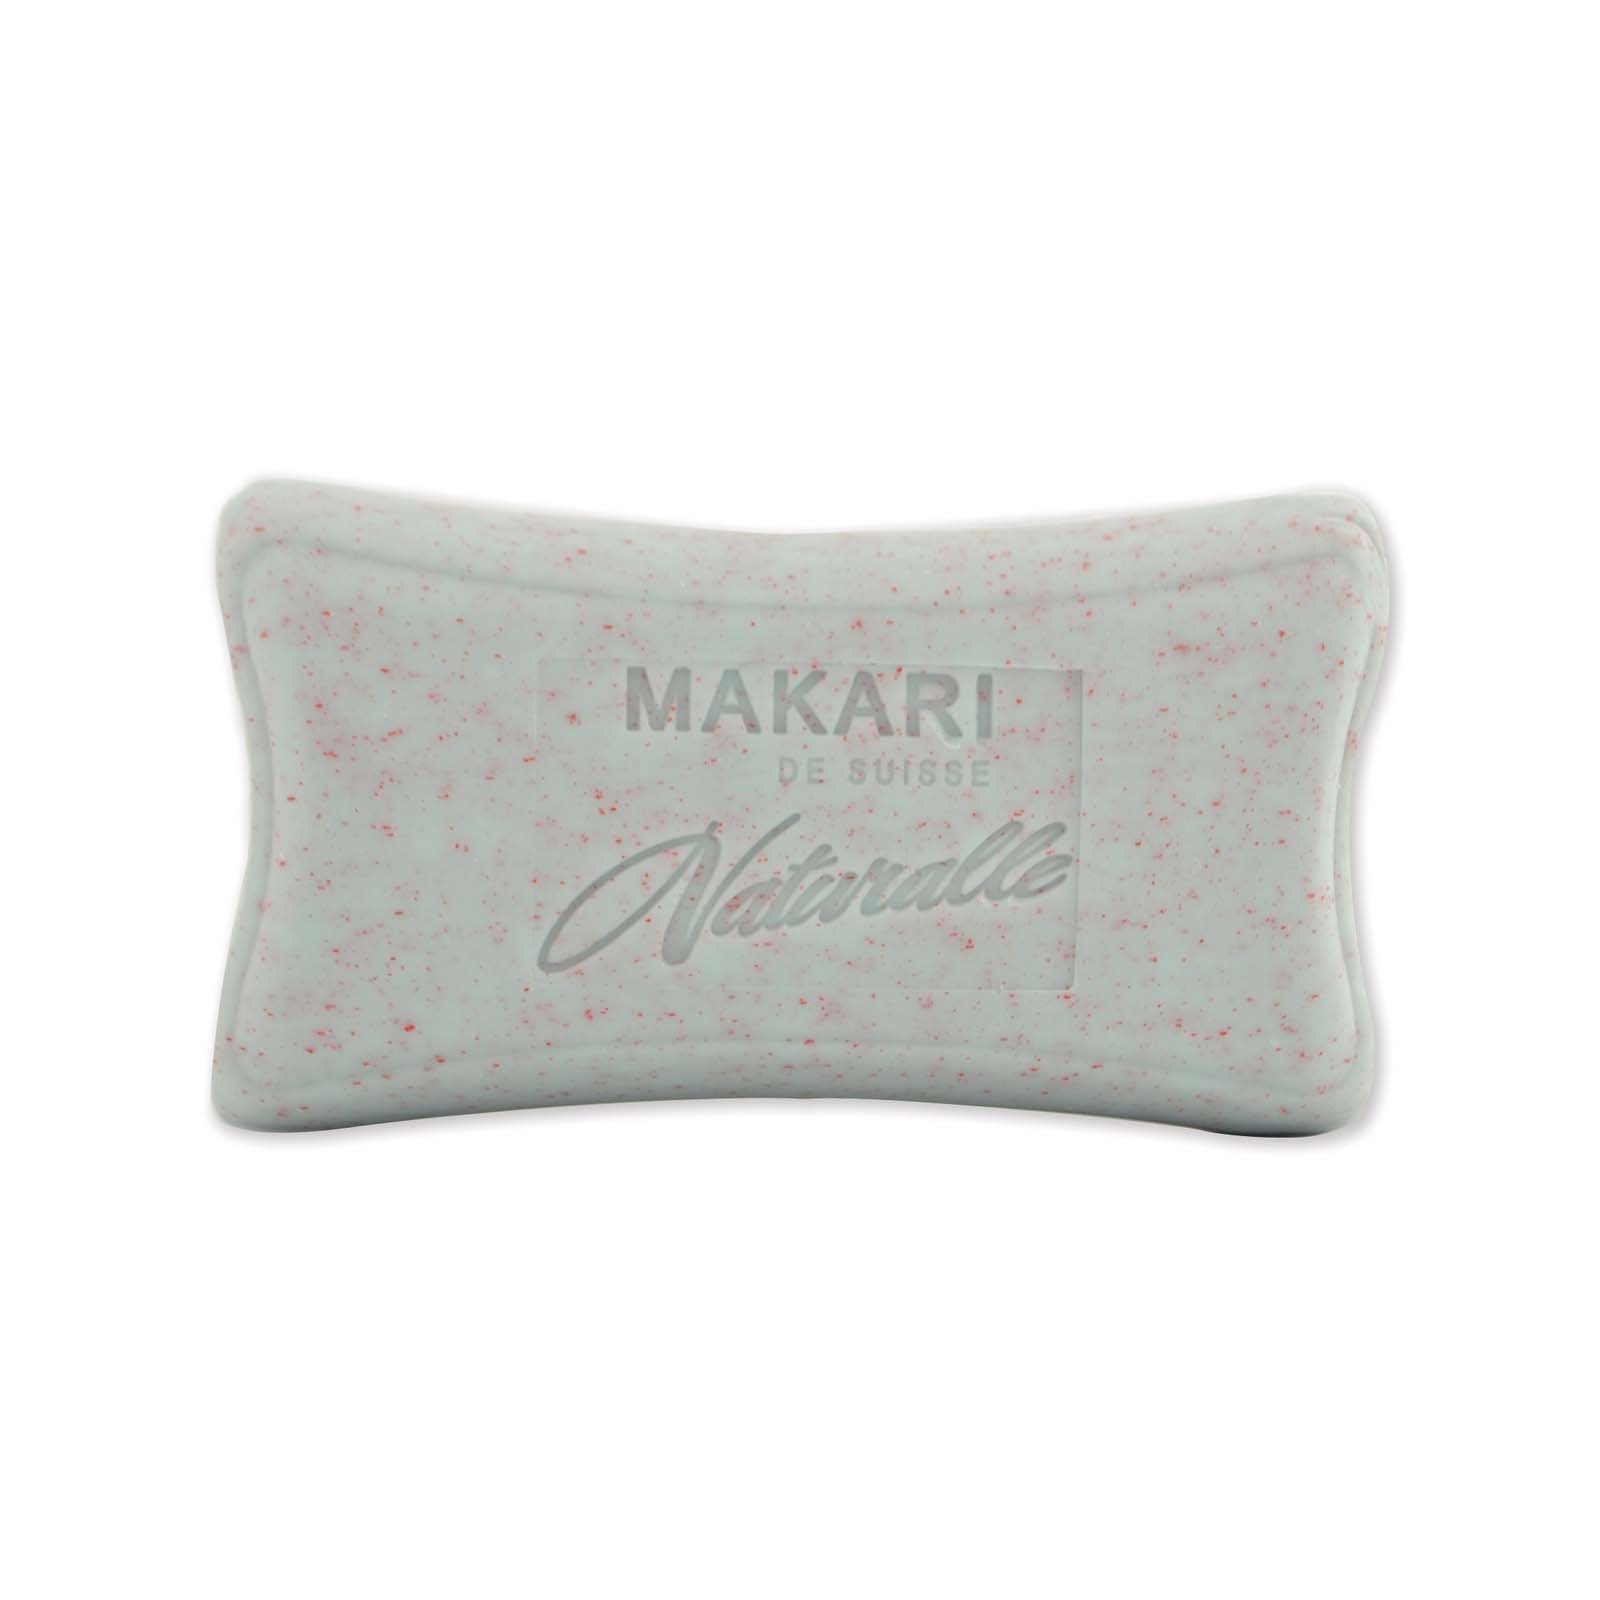 MAKARI NATURALLE ® Multi-Action Lightening SOAP.